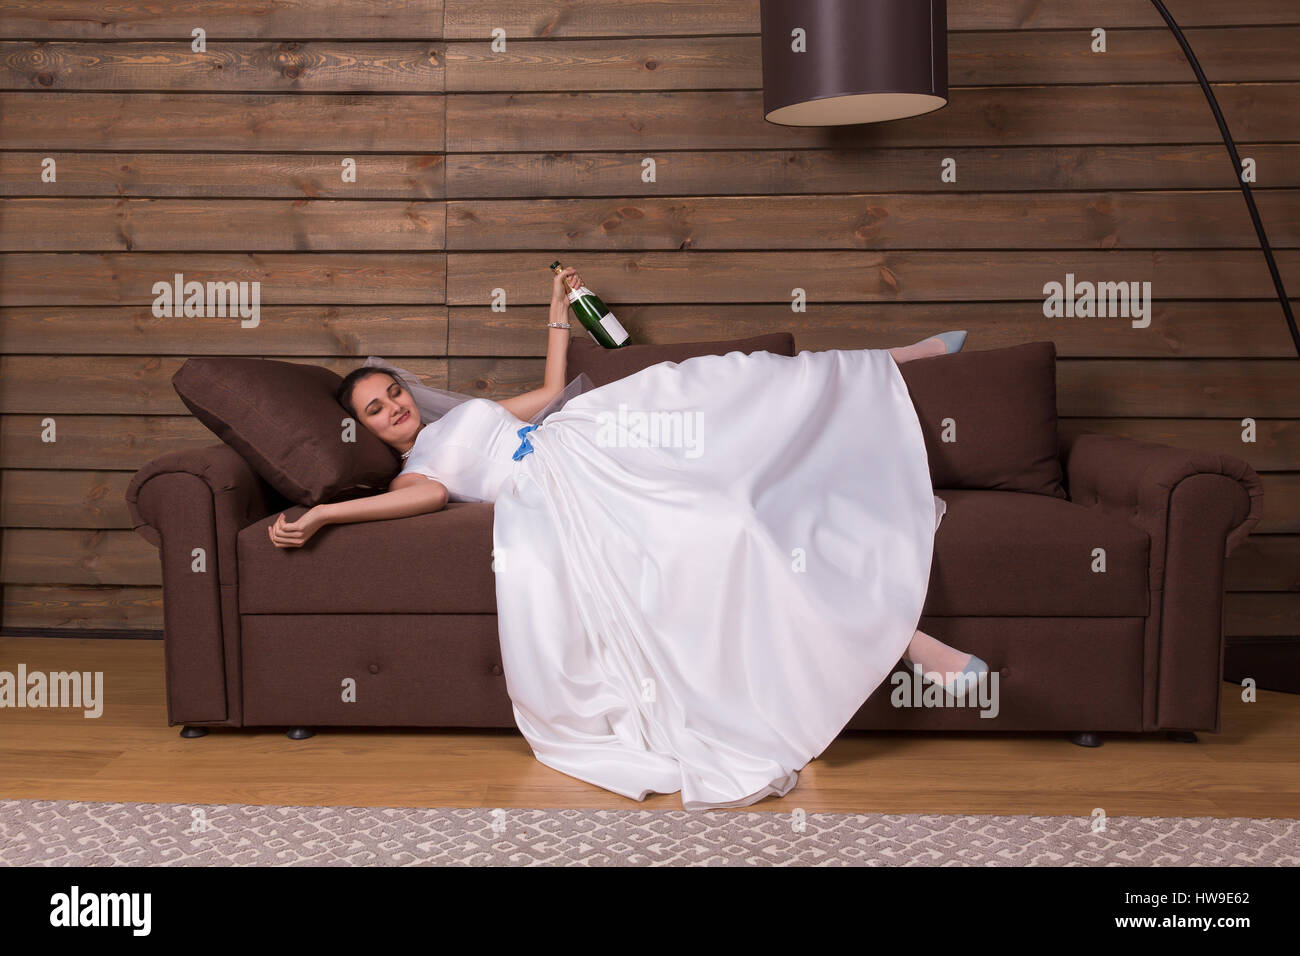 Ubriaco sposa con bottiglia di alcool in mano potrete rilassarvi sul lettino dopo la celebrazione dei matrimoni. Interni in legno della camera sullo sfondo Foto Stock